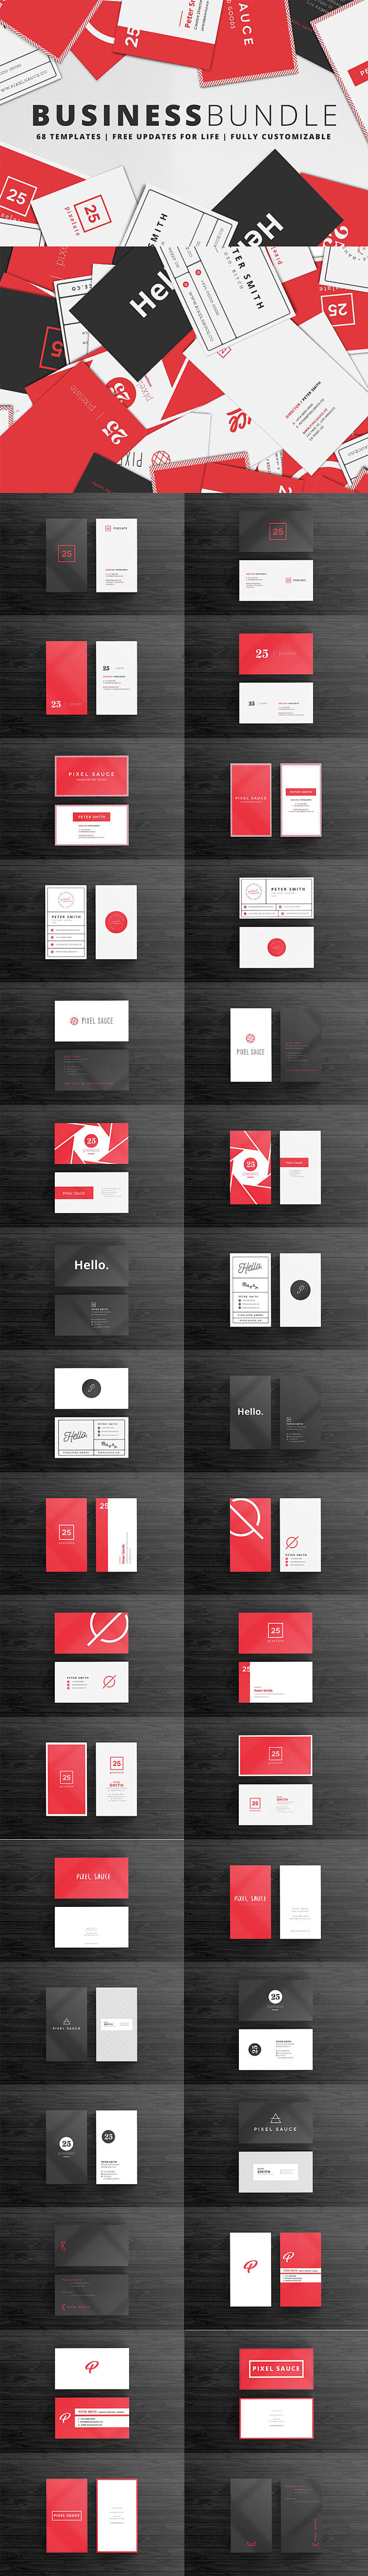 黑白红3颜色搭配设计出的高端商务名片分享...